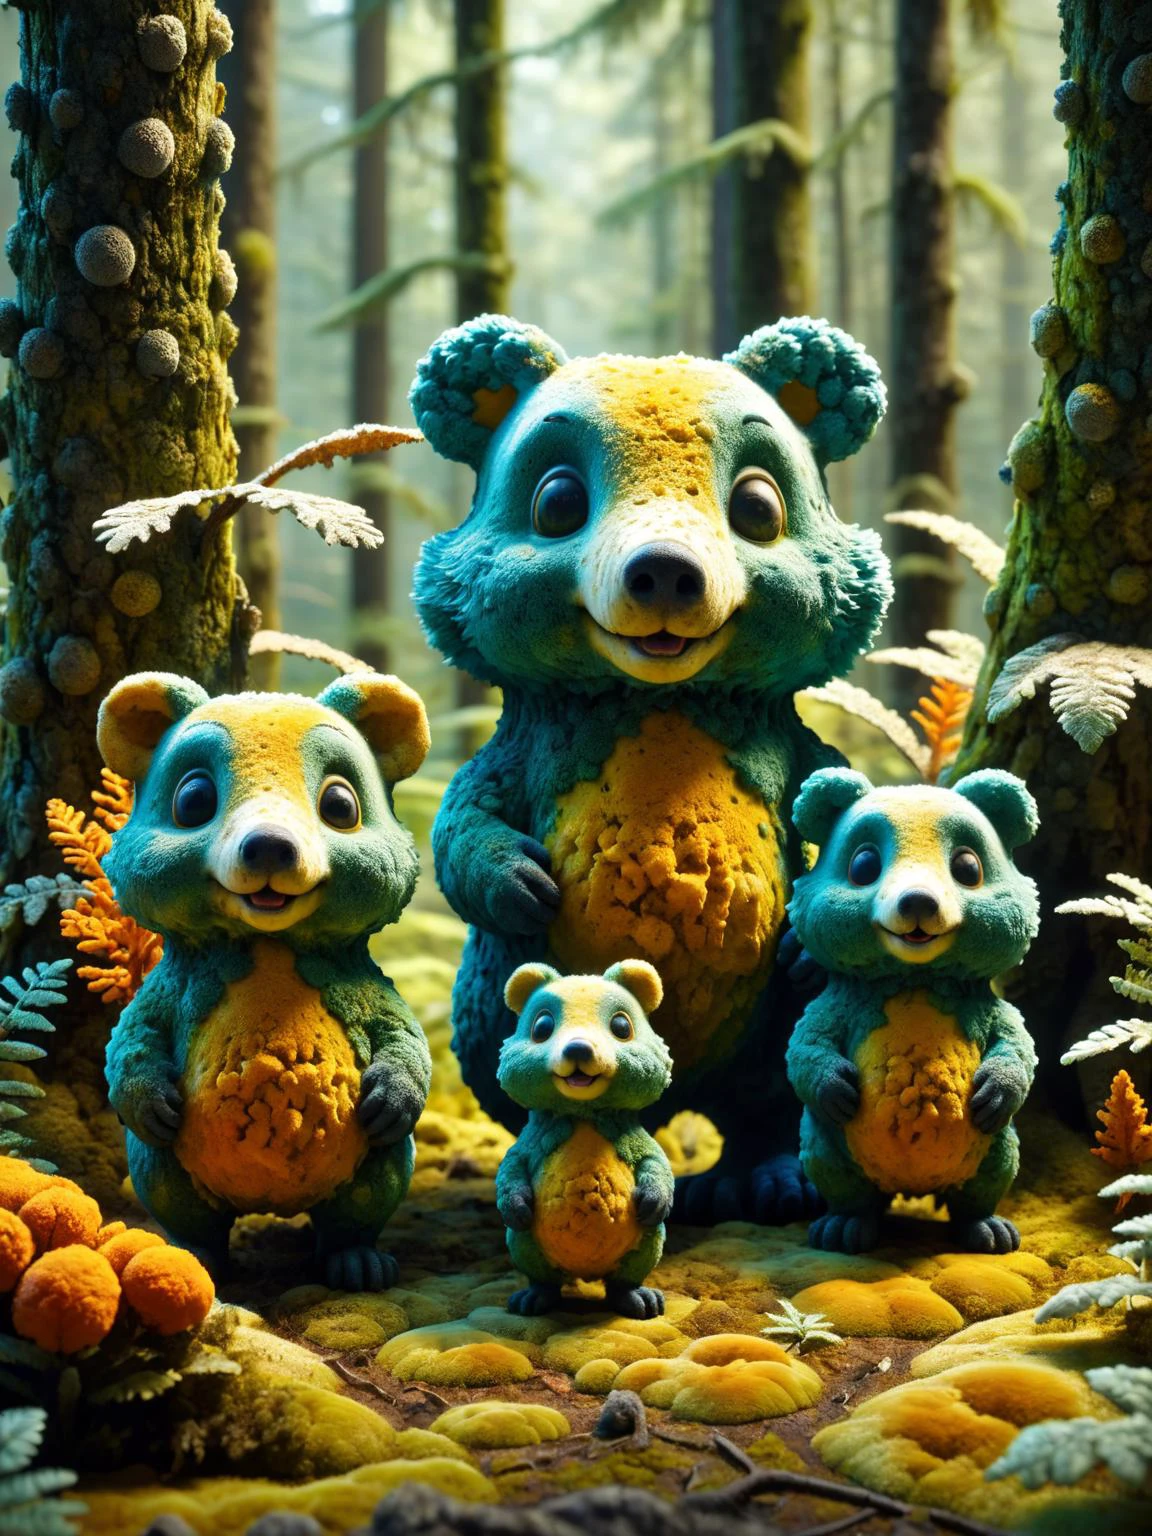 molde ral, Uma representação lúdica em estilo de animação de uma família de animais mofados em uma floresta, com cores vibrantes e texturas de molde envolventes dinâmicas, cinematic, Obra de arte, intricado, hdr, 